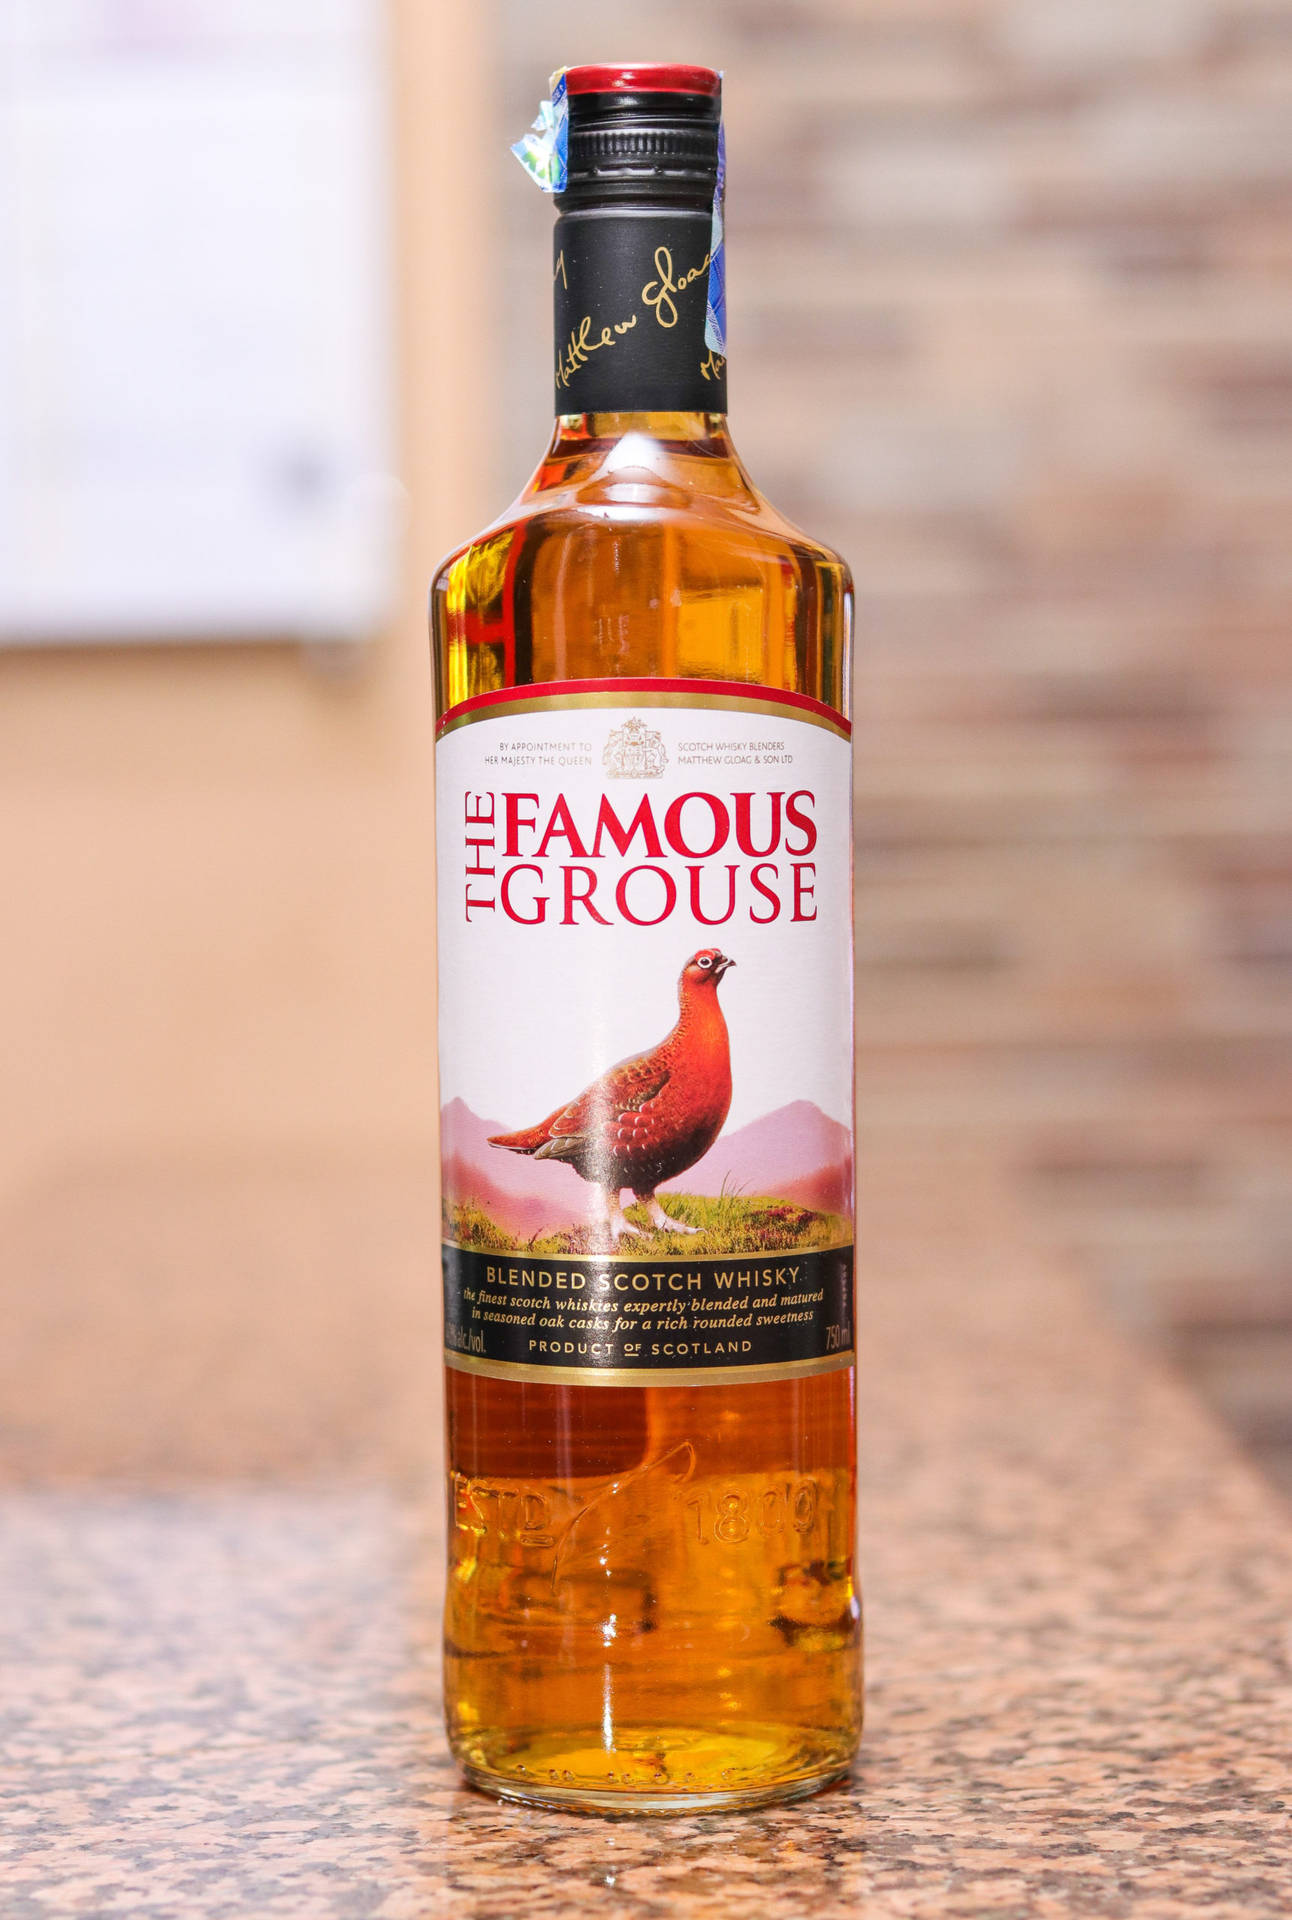 Derfamous Grouse Whisky Alkoholische Getränk Wallpaper